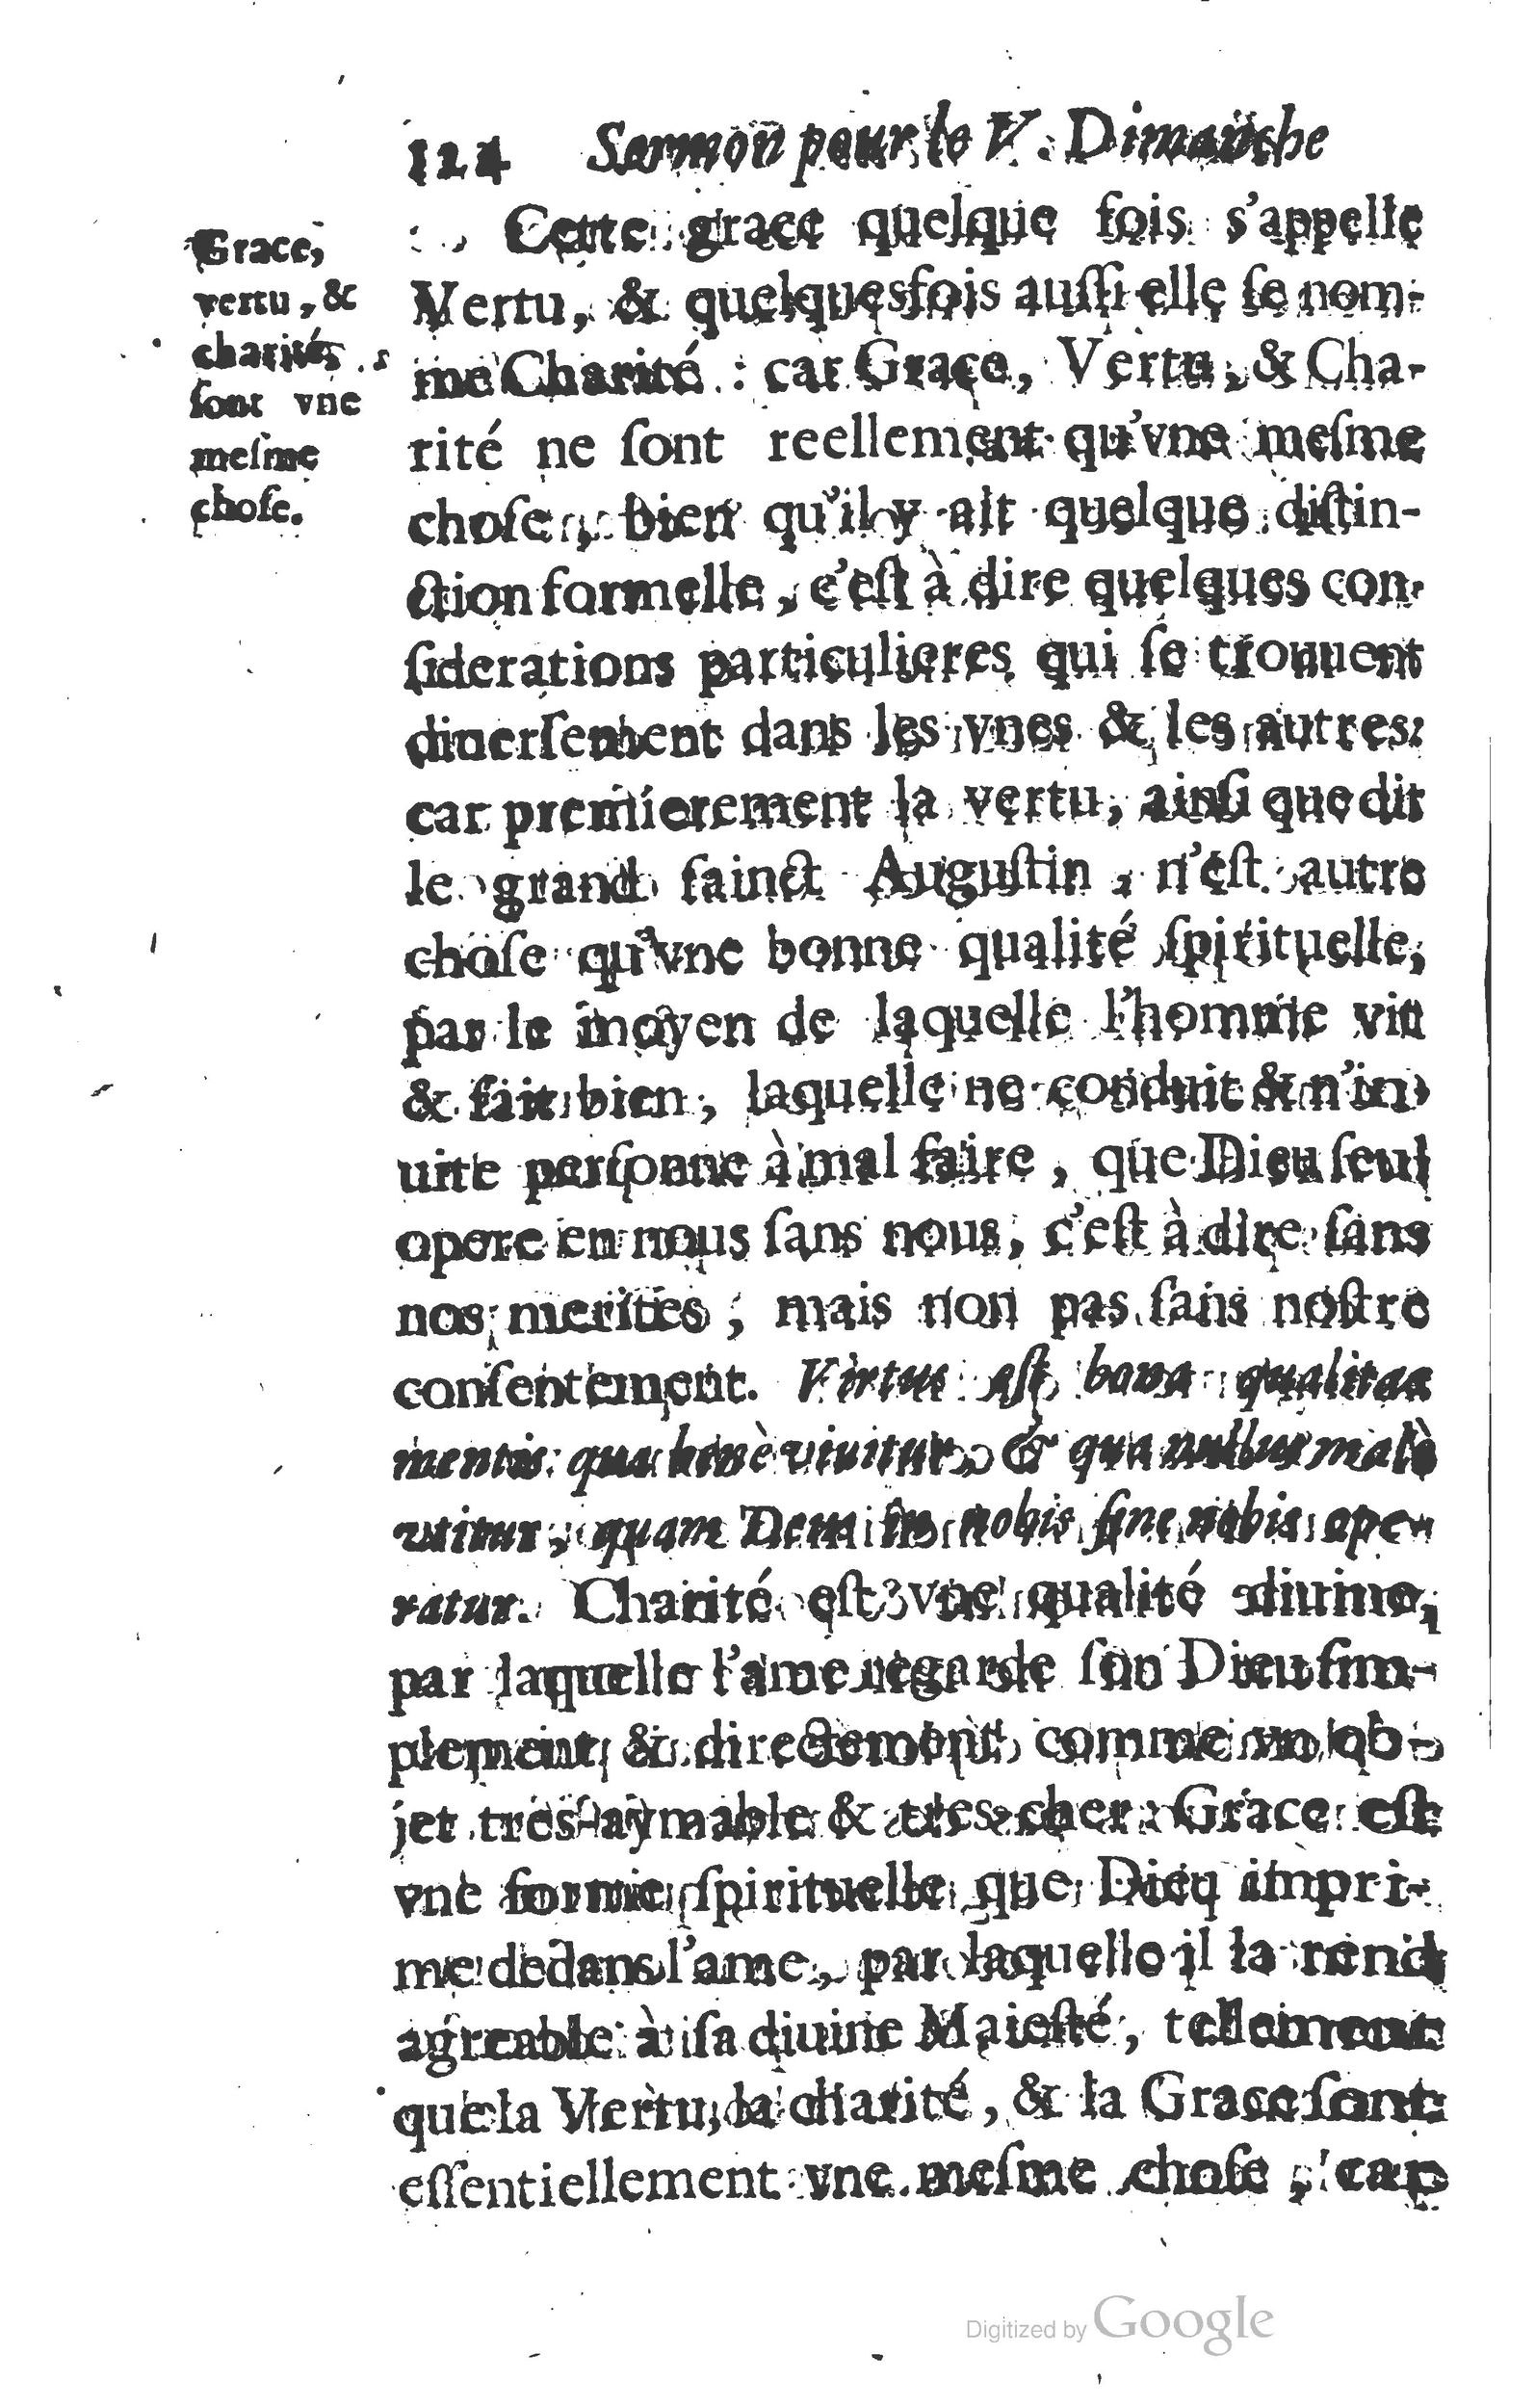 1629 Sermons ou trésor de la piété chrétienne_Page_147.jpg